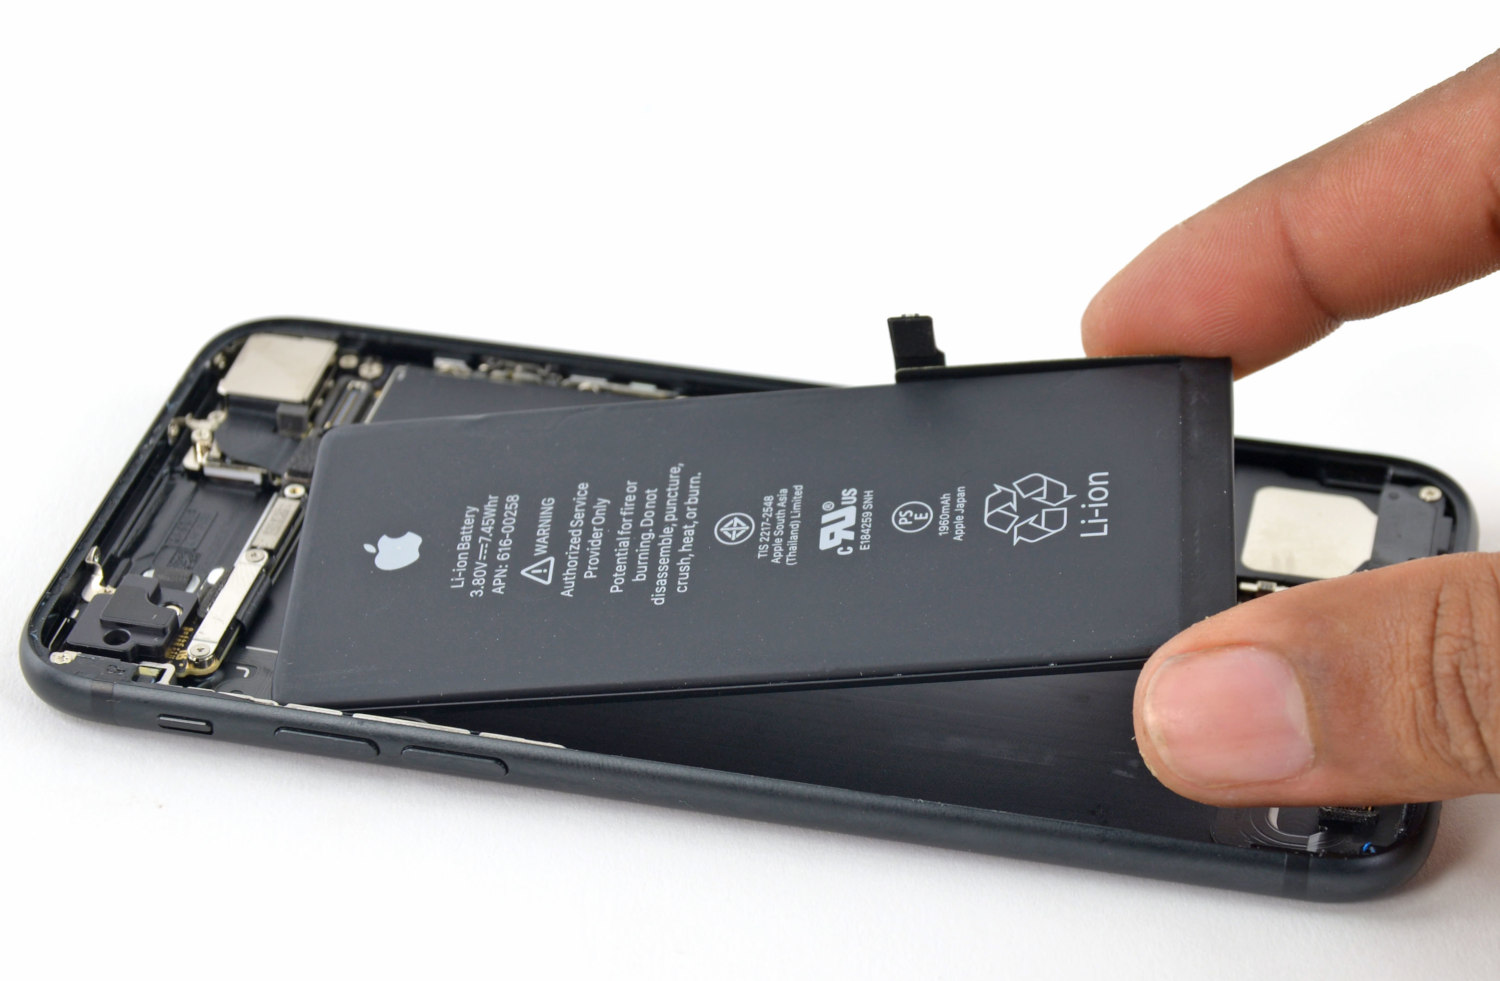 iFixit / desmonte do iPhone 7, com remoção da bateria interna / Apple